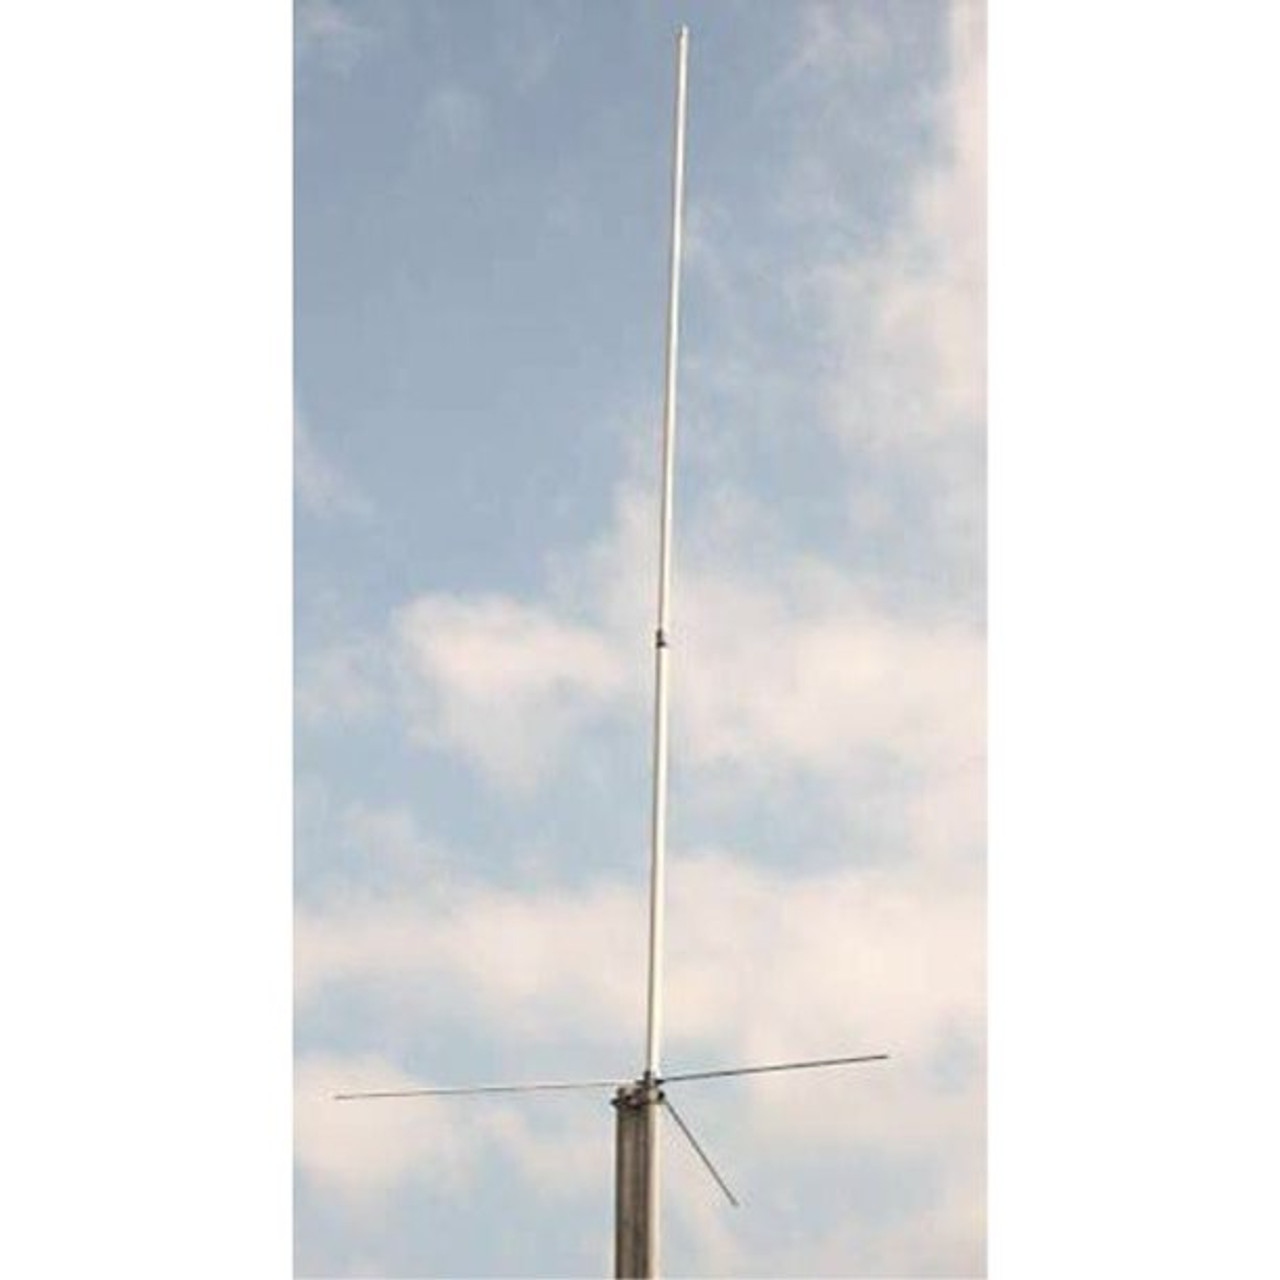 Workman UVS200 Dual Band VHF/UHF Base Antenna